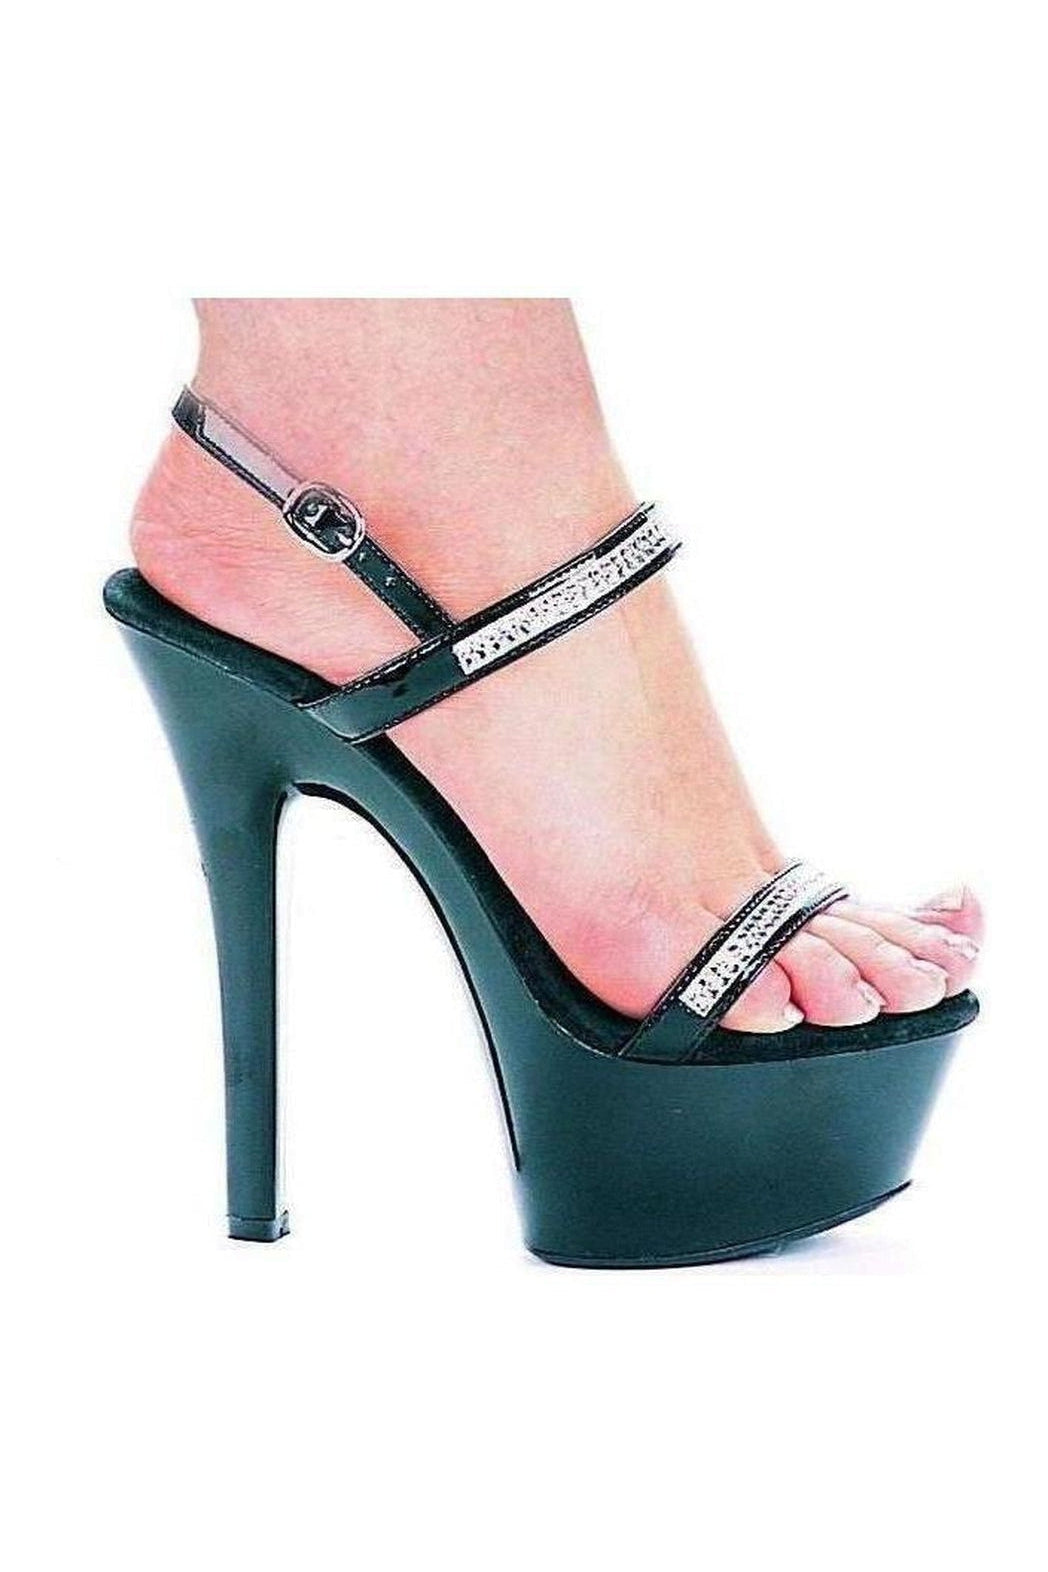 601-DIAMOND Platform Sandal | Black Patent-Ellie Shoes-Black-Sandals-SEXYSHOES.COM